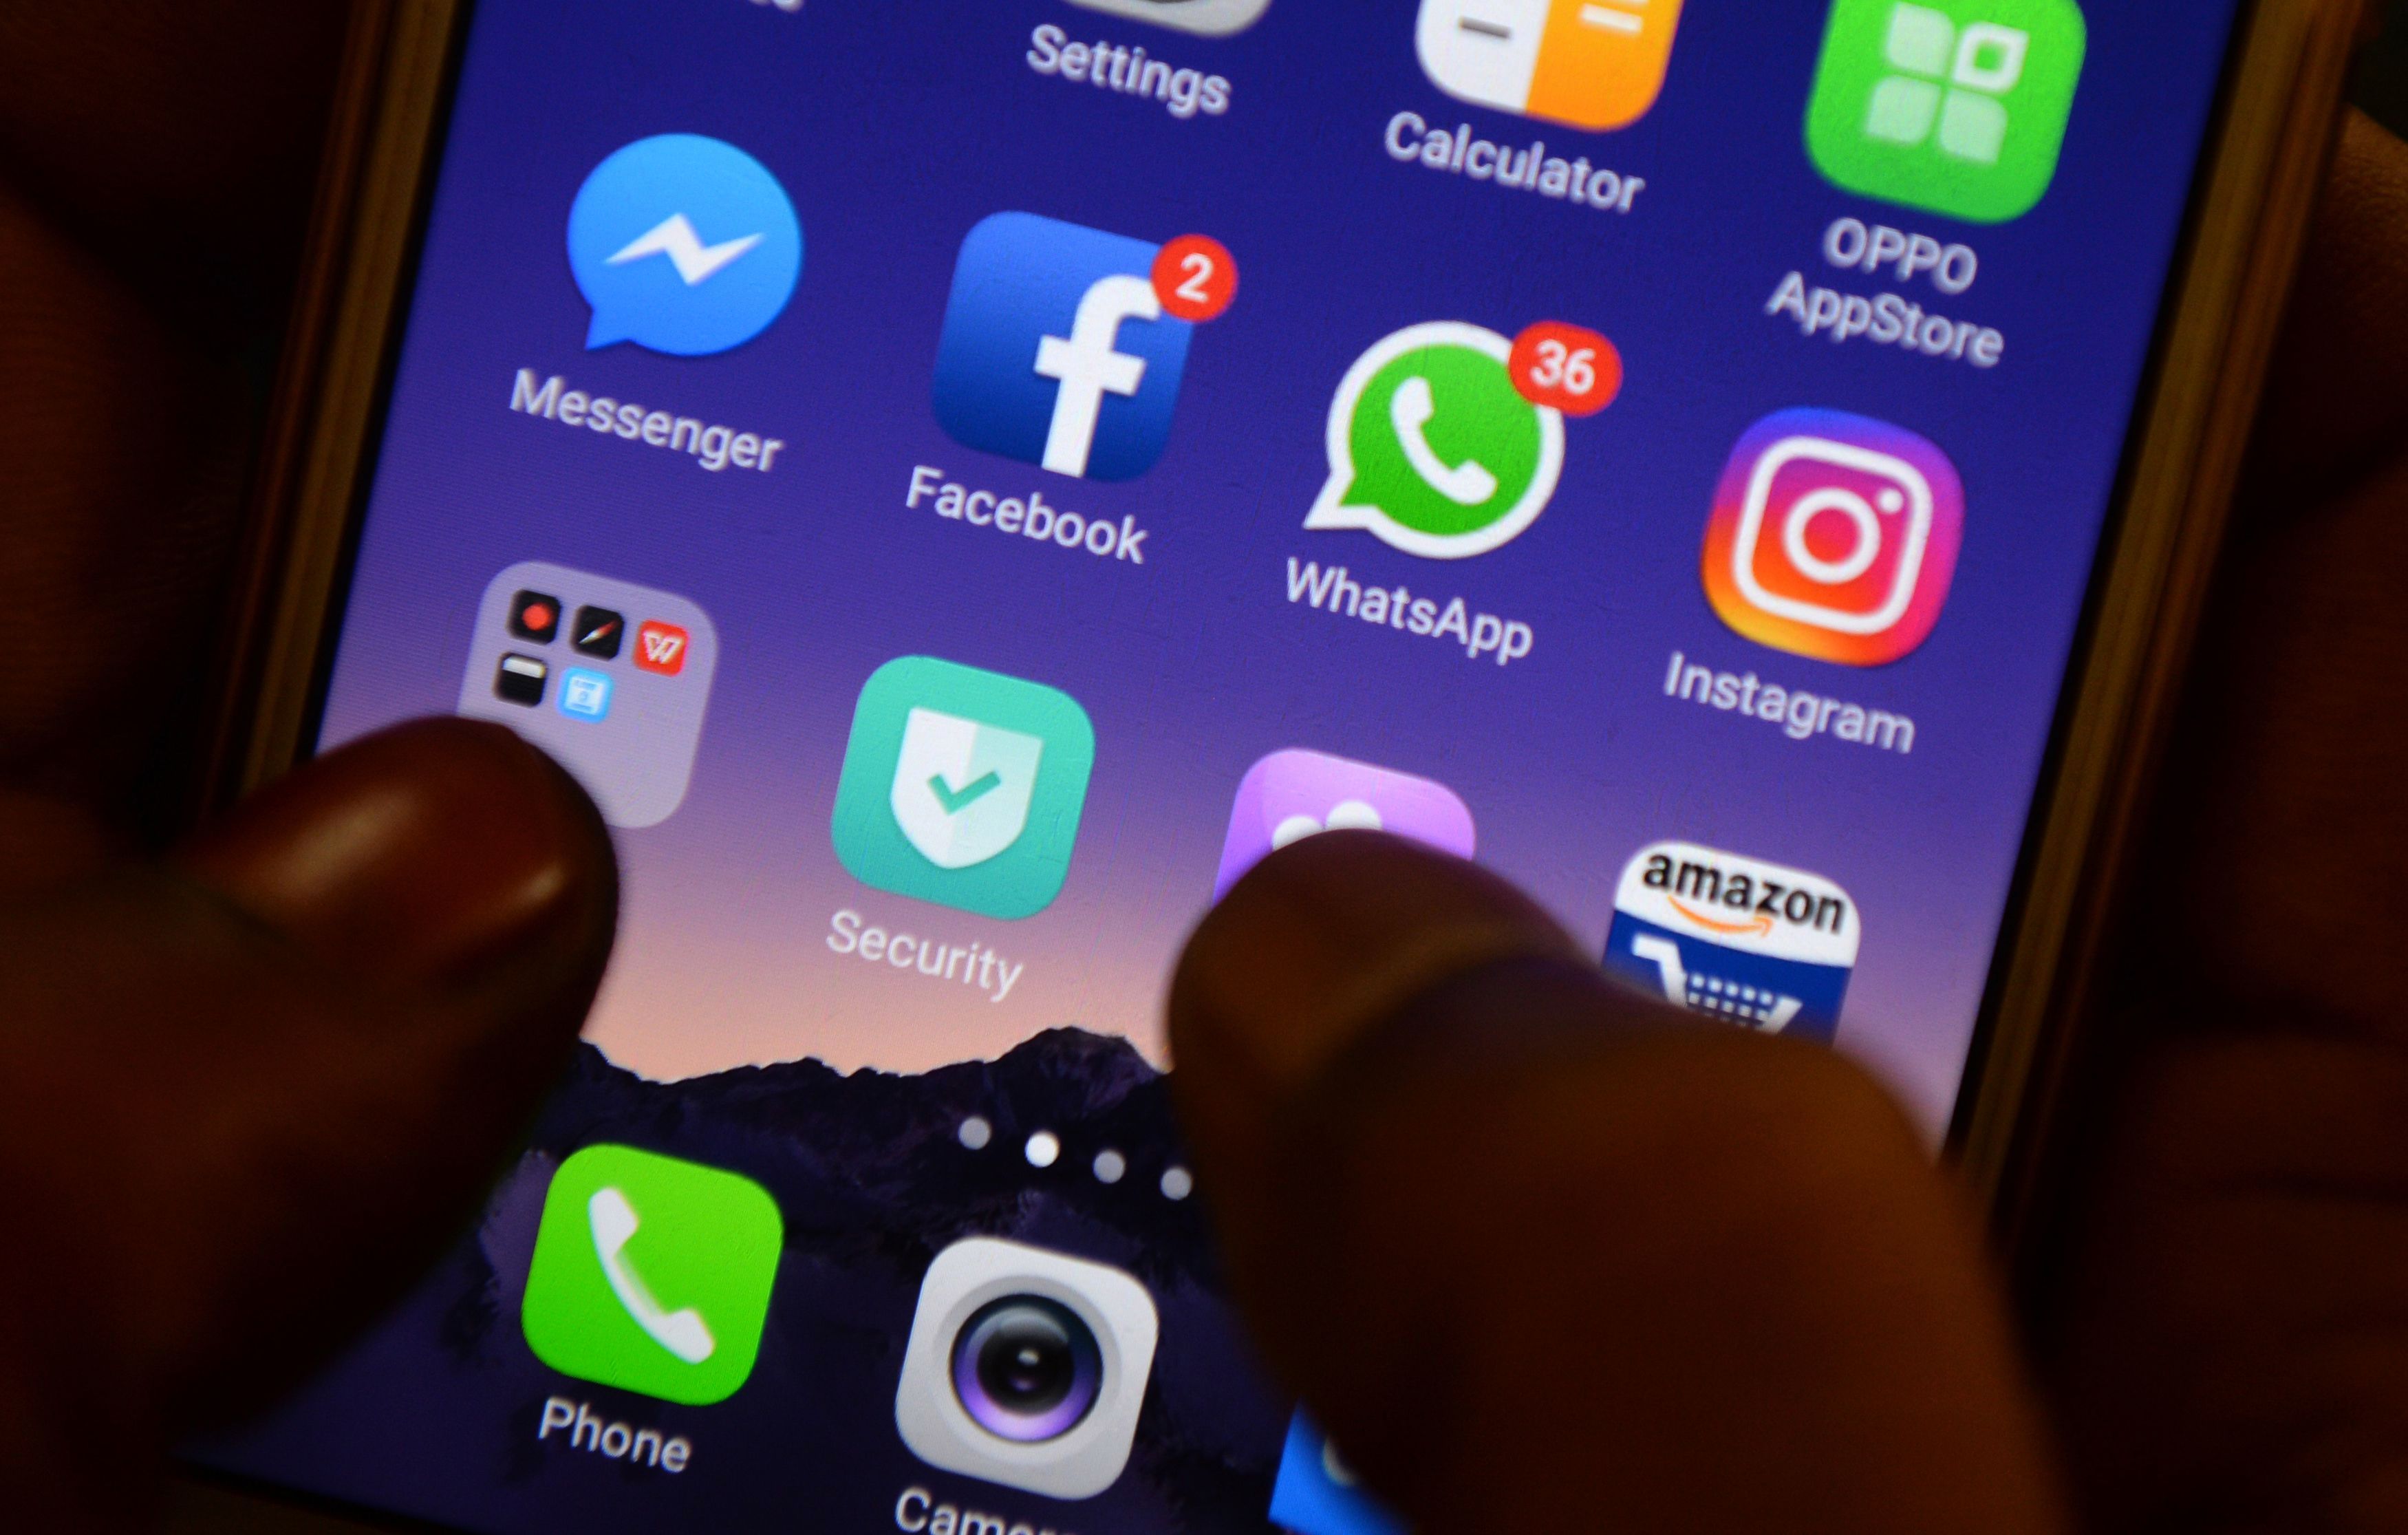  Facebook  на самом деле владеет Whatsapp, но какое-то время планировал объединенное приложение для обмена сообщениями